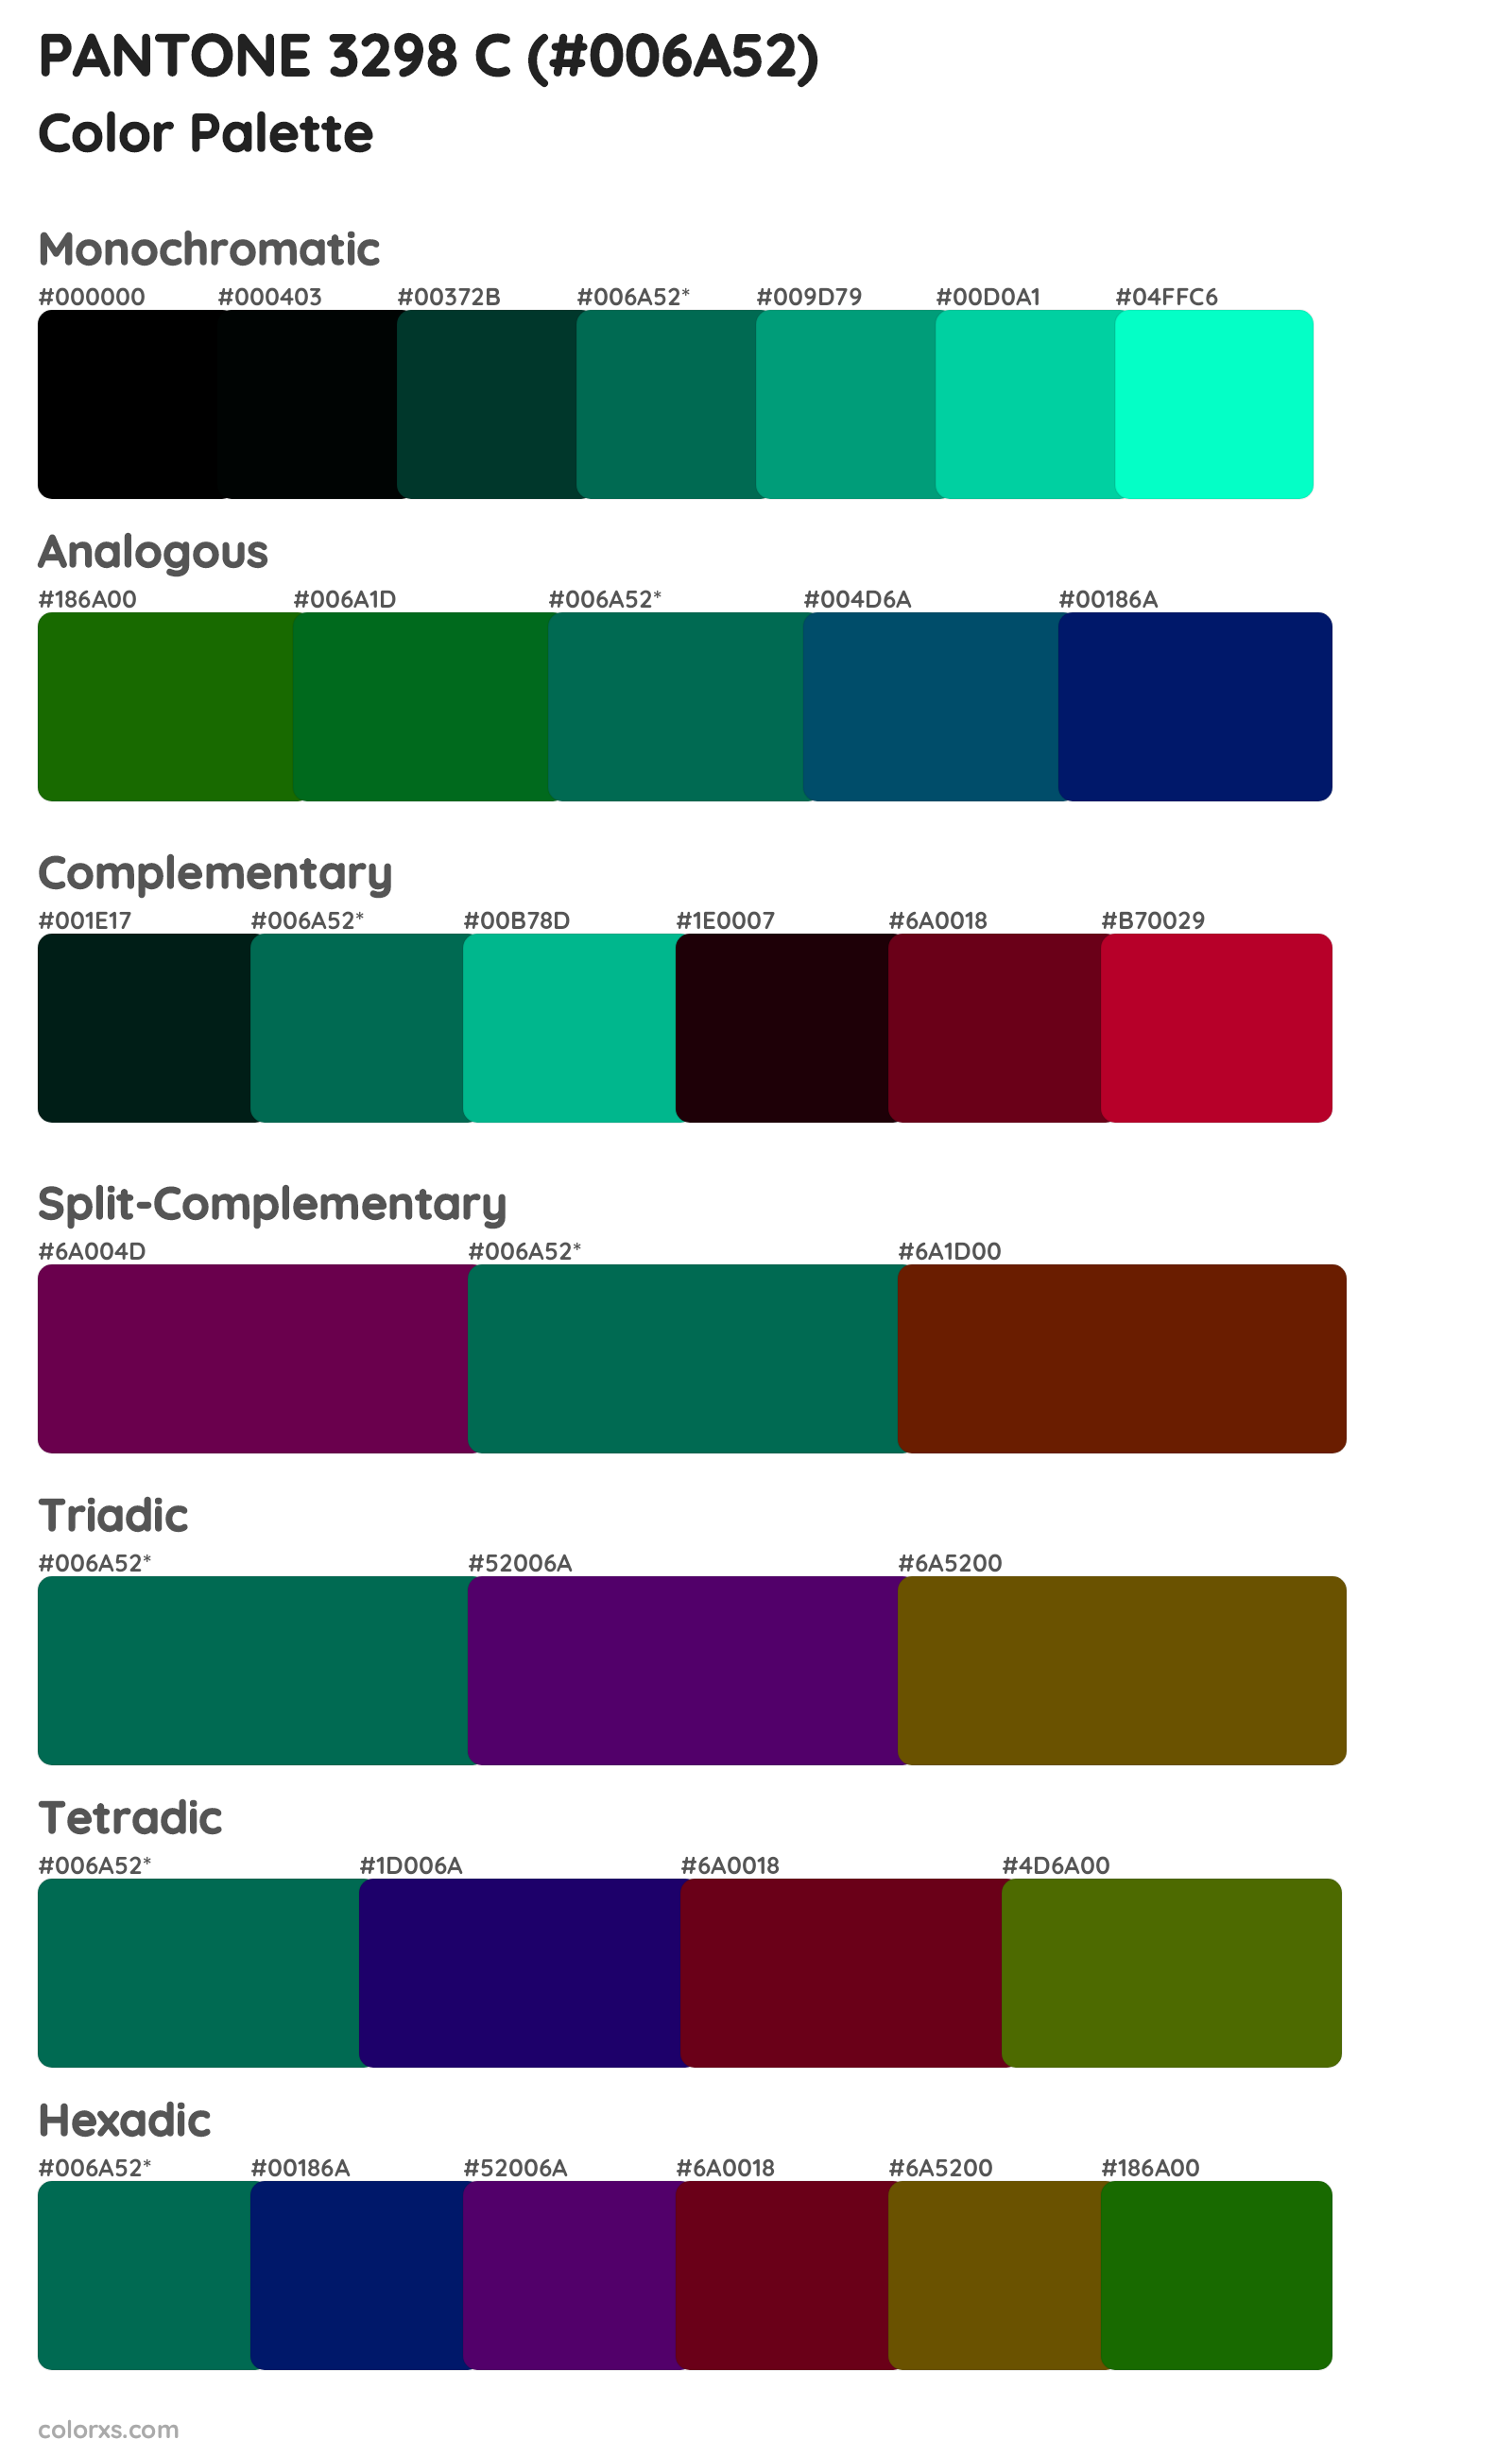 PANTONE 3298 C Color Scheme Palettes